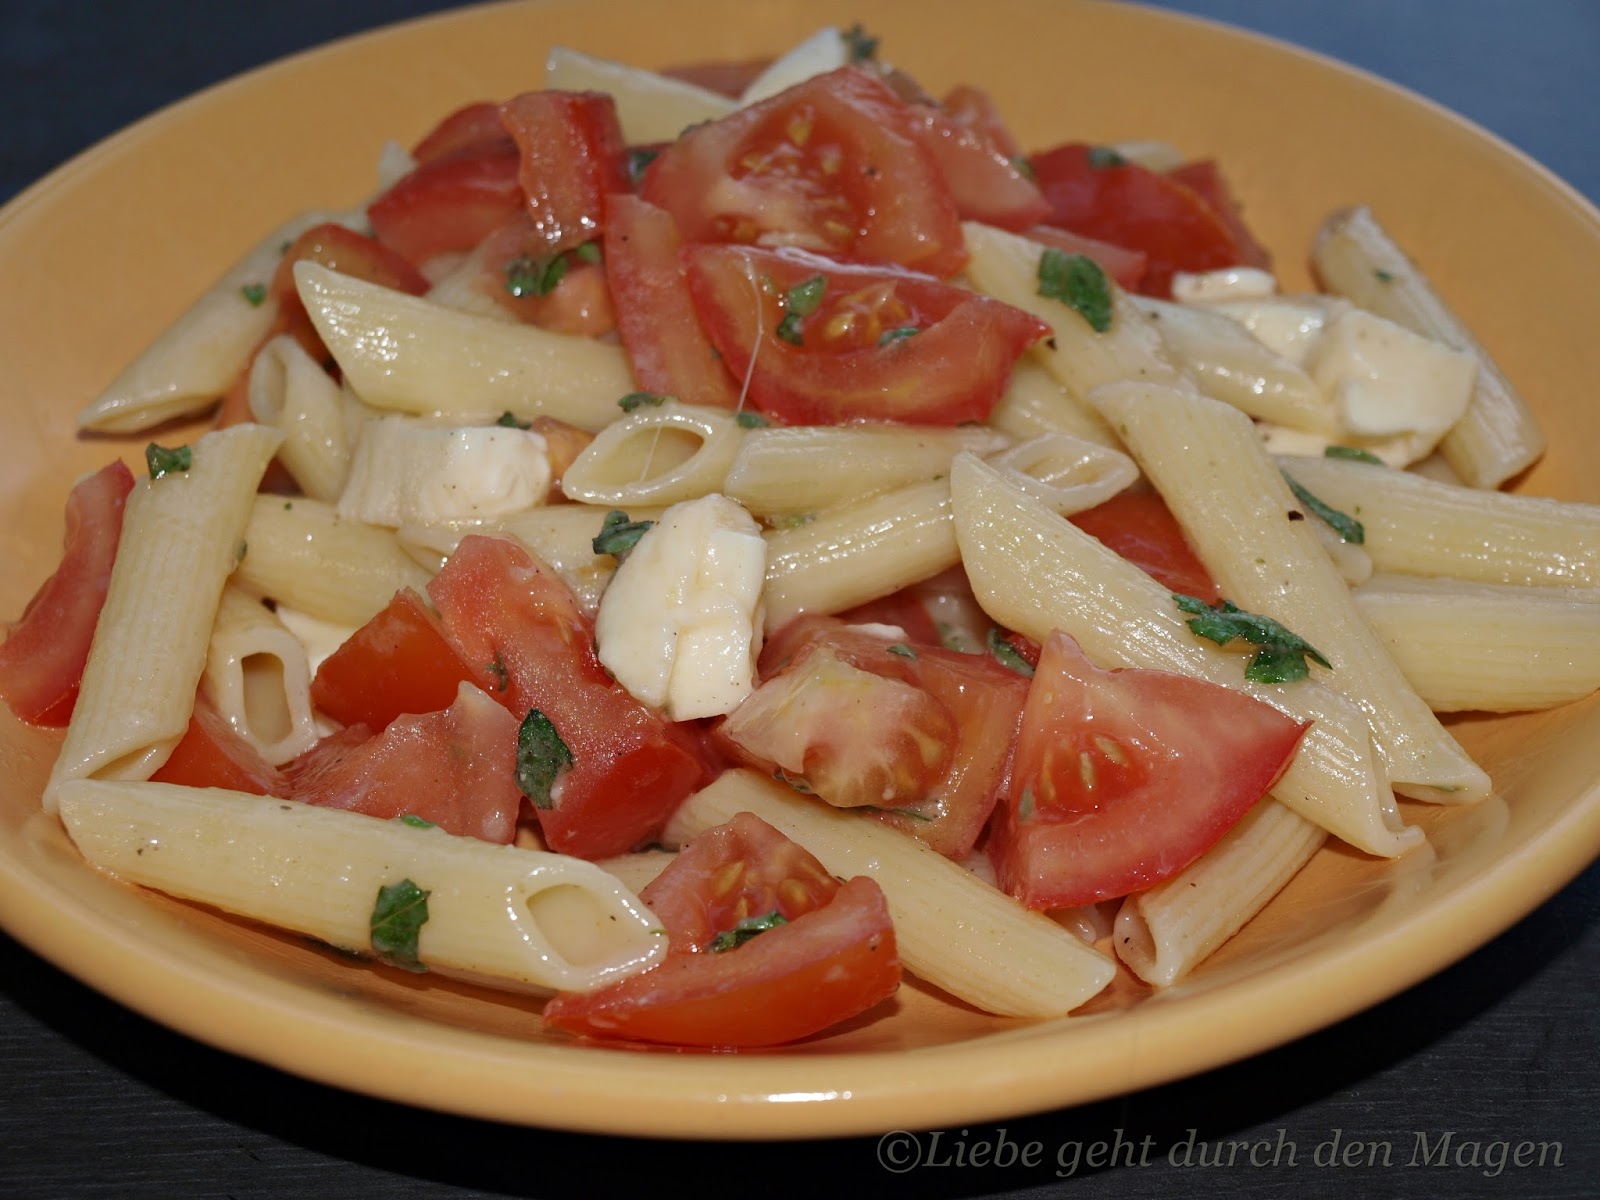 Liebe geht durch den Magen: Nudeln mit Tomaten und Mozzarella